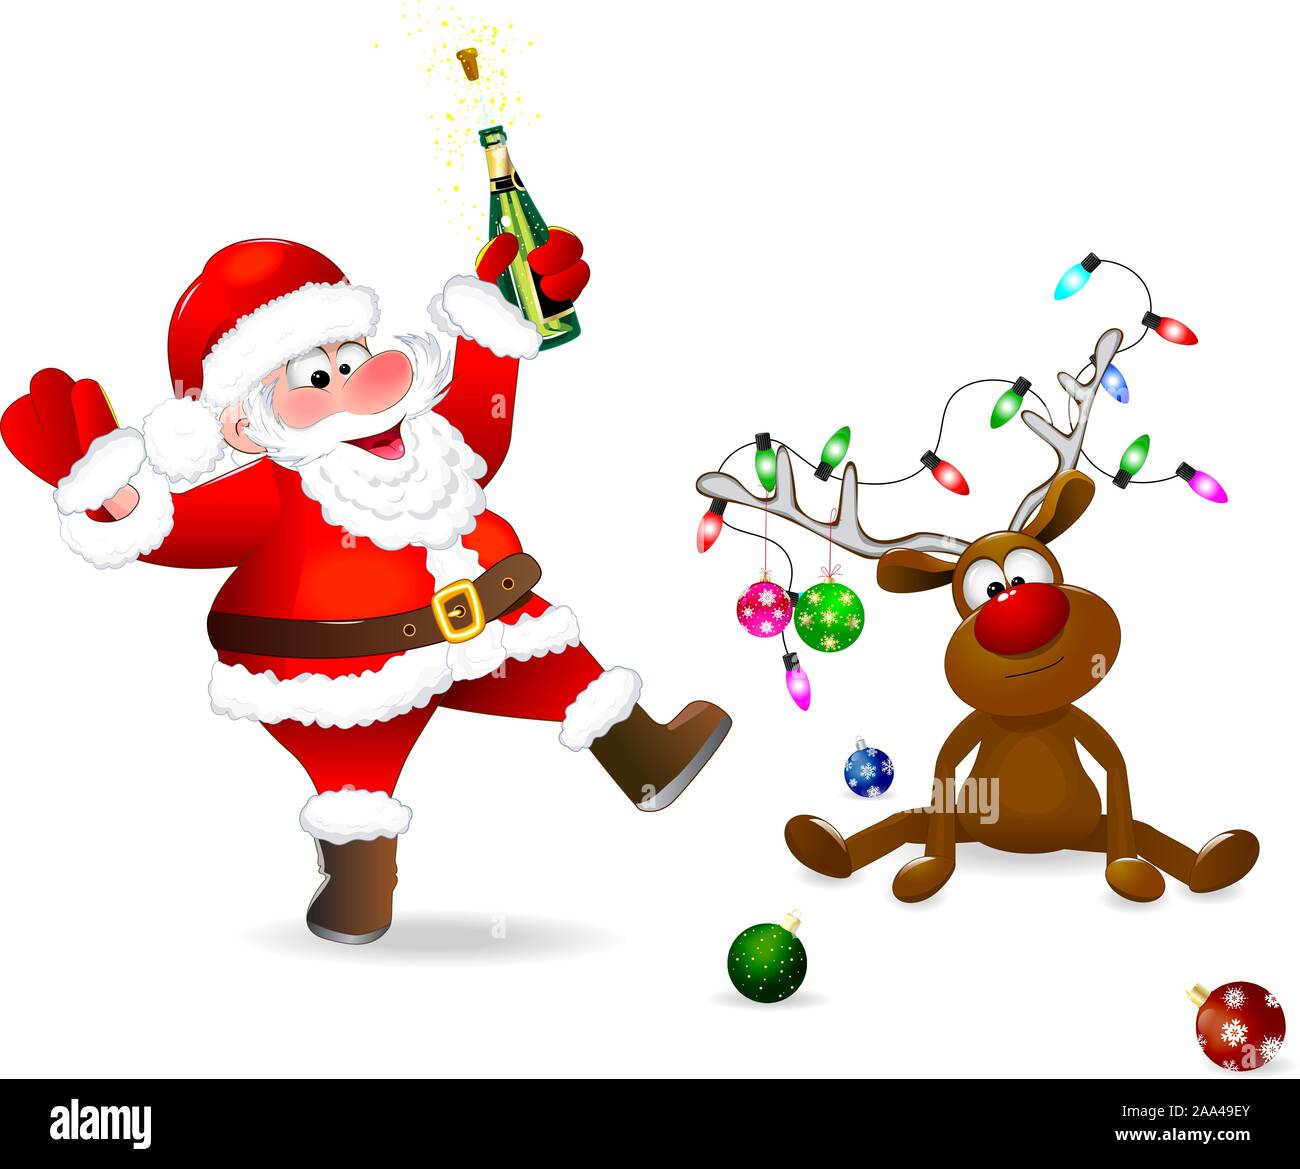 Babbo Natale con una bottiglia in mano. Il cervo è decorato con le palle di Natale e una ghirlanda di luci. Santa e cervi su uno sfondo bianco. Illustrazione Vettoriale